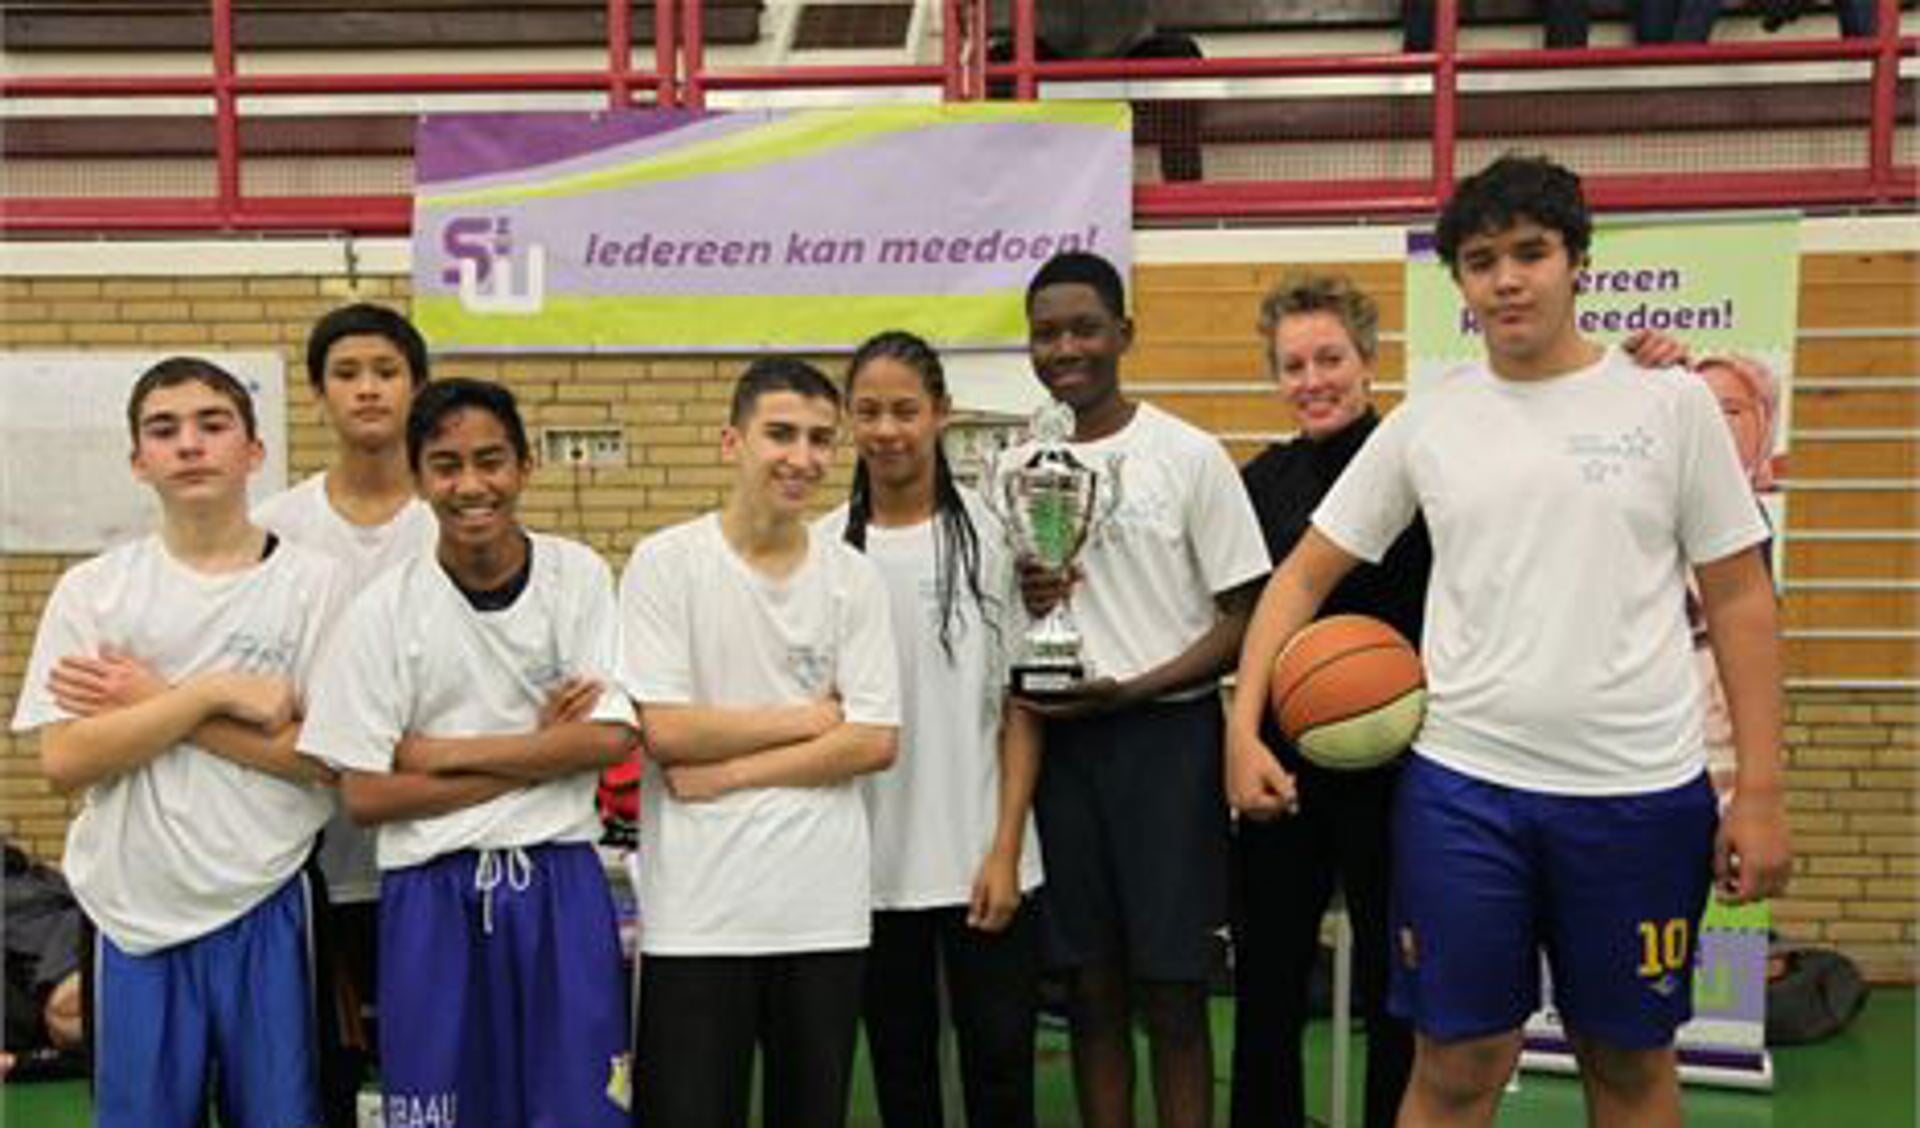 Het basketbaltoernooi werd gewonnen door Veurs Voorburg 1.